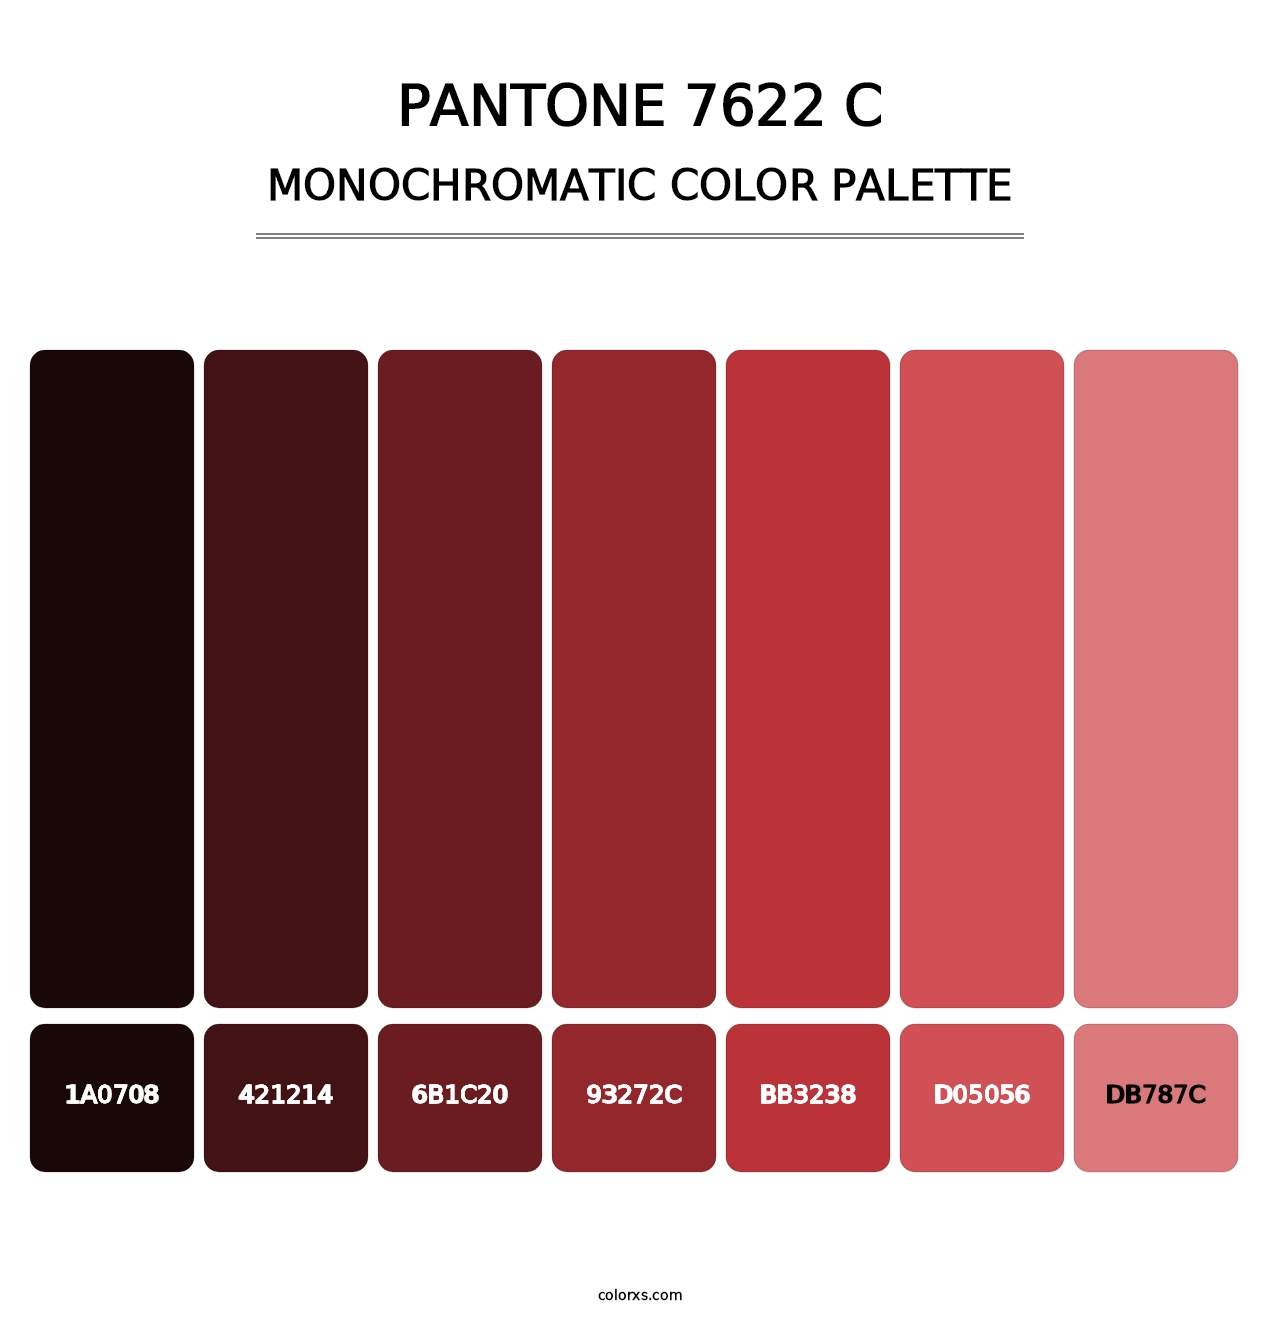 PANTONE 7622 C - Monochromatic Color Palette